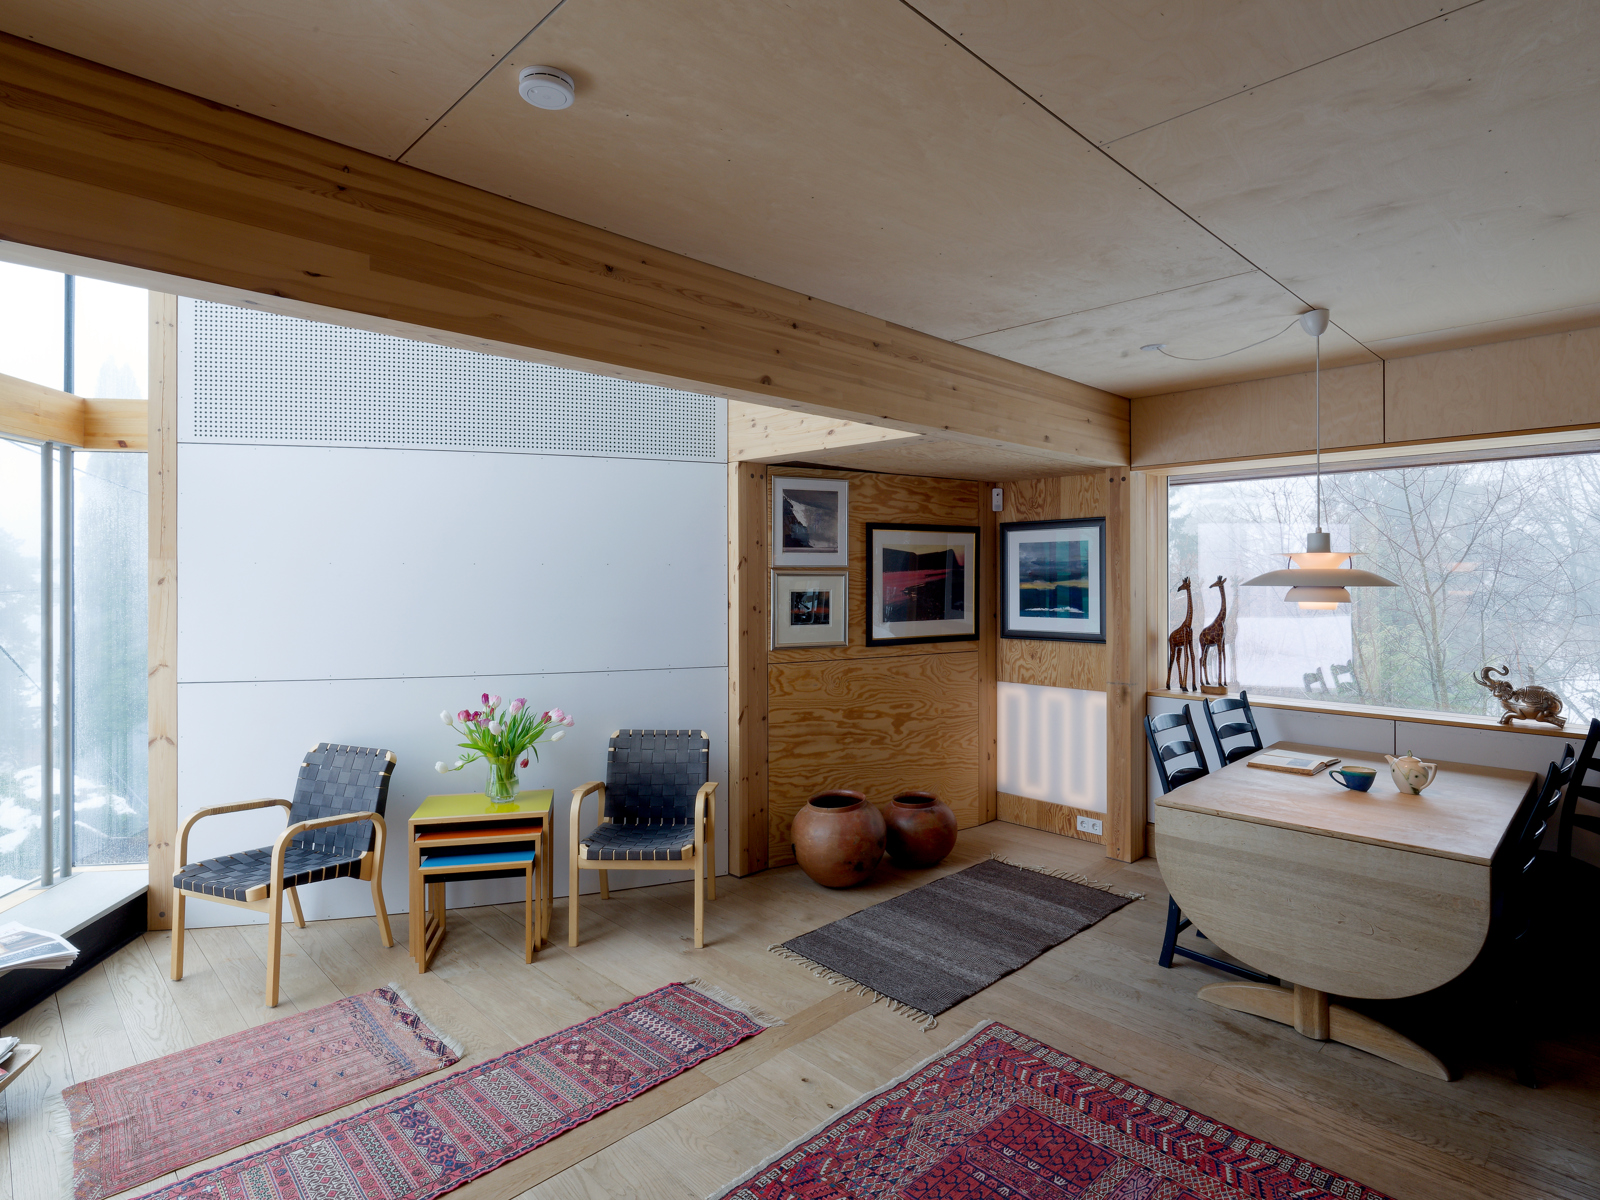 Interiør foto av stue i enebolig, ulike tepper på gulvet og lys inn fra flere kanter. 